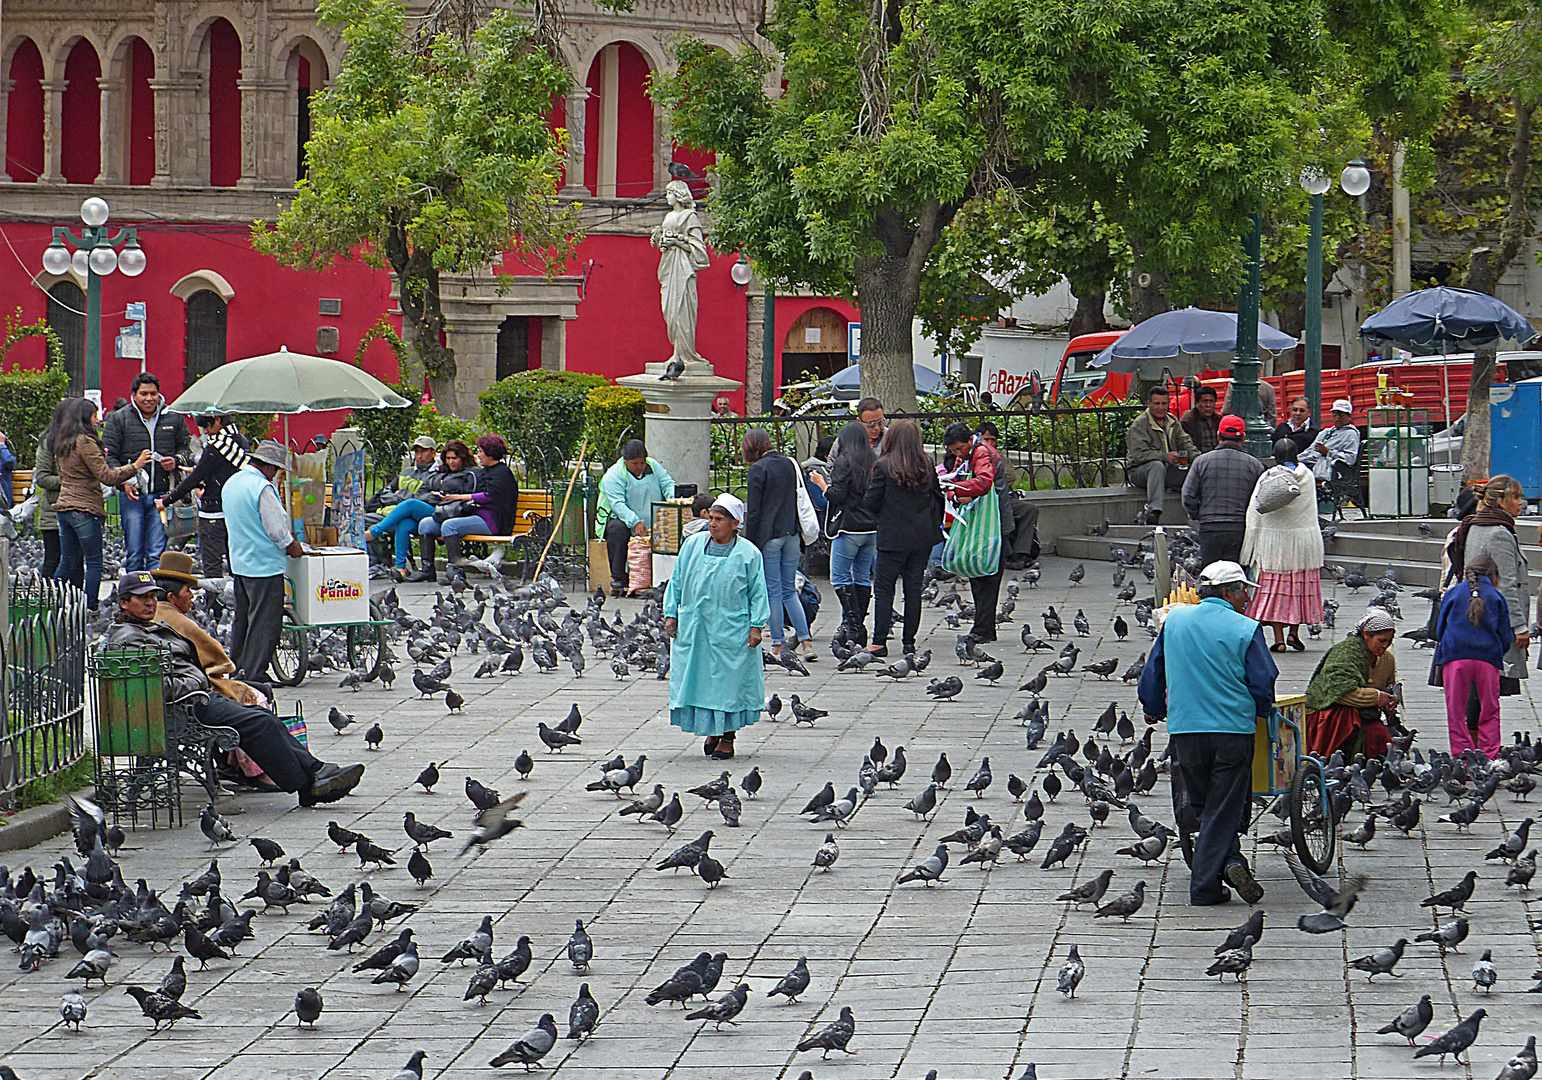 Regierungsviertel in La Paz